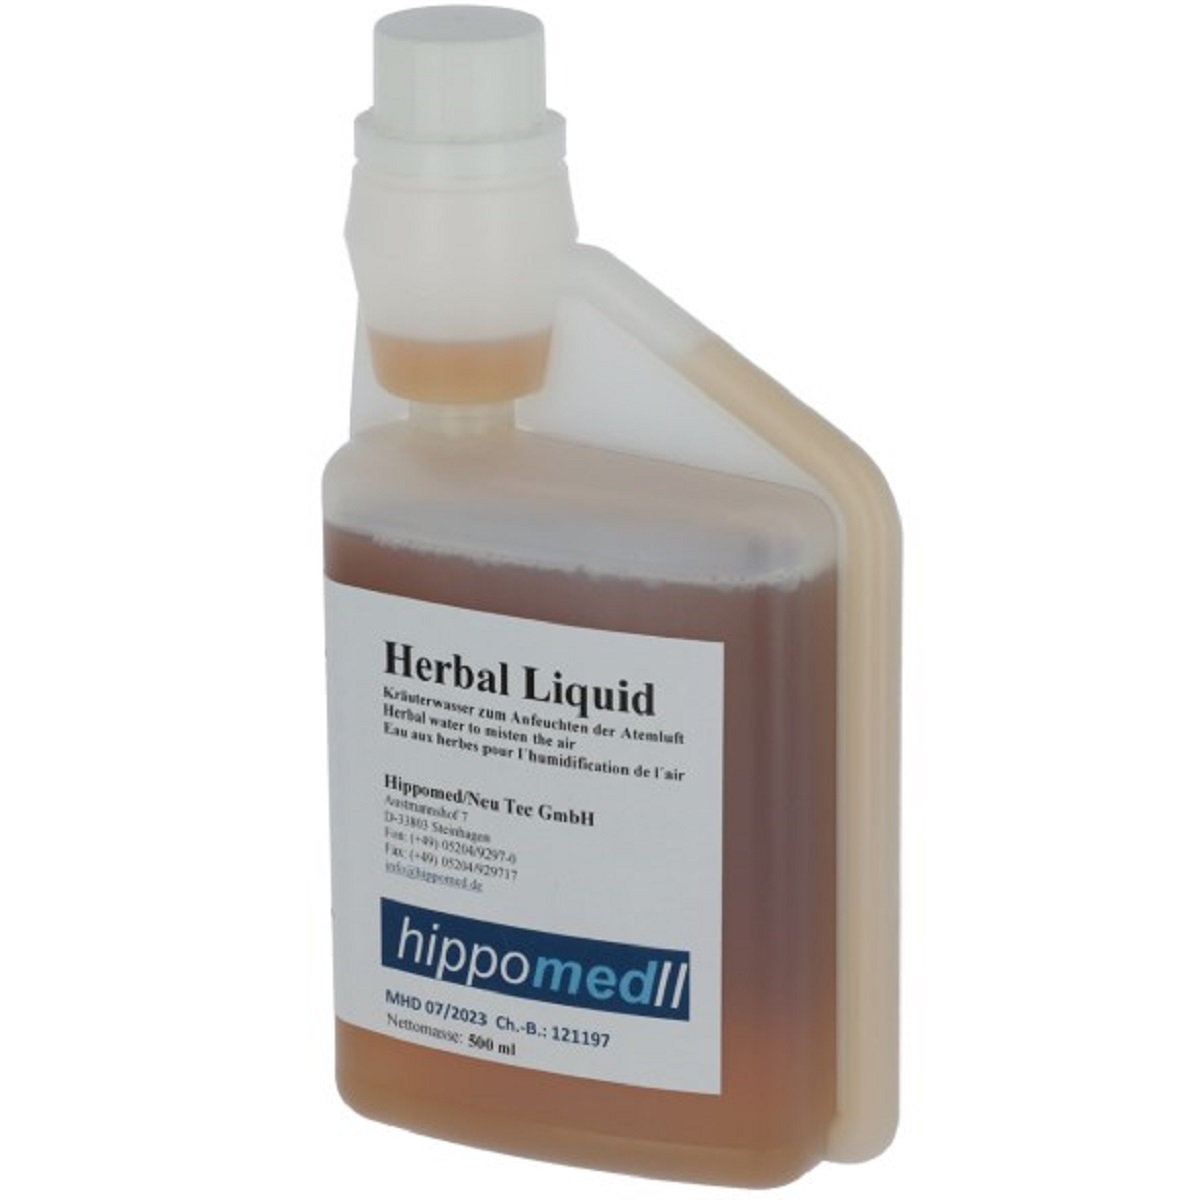 Herbal Liquid Acqua alle erbe aromatiche per umidificare l'aria